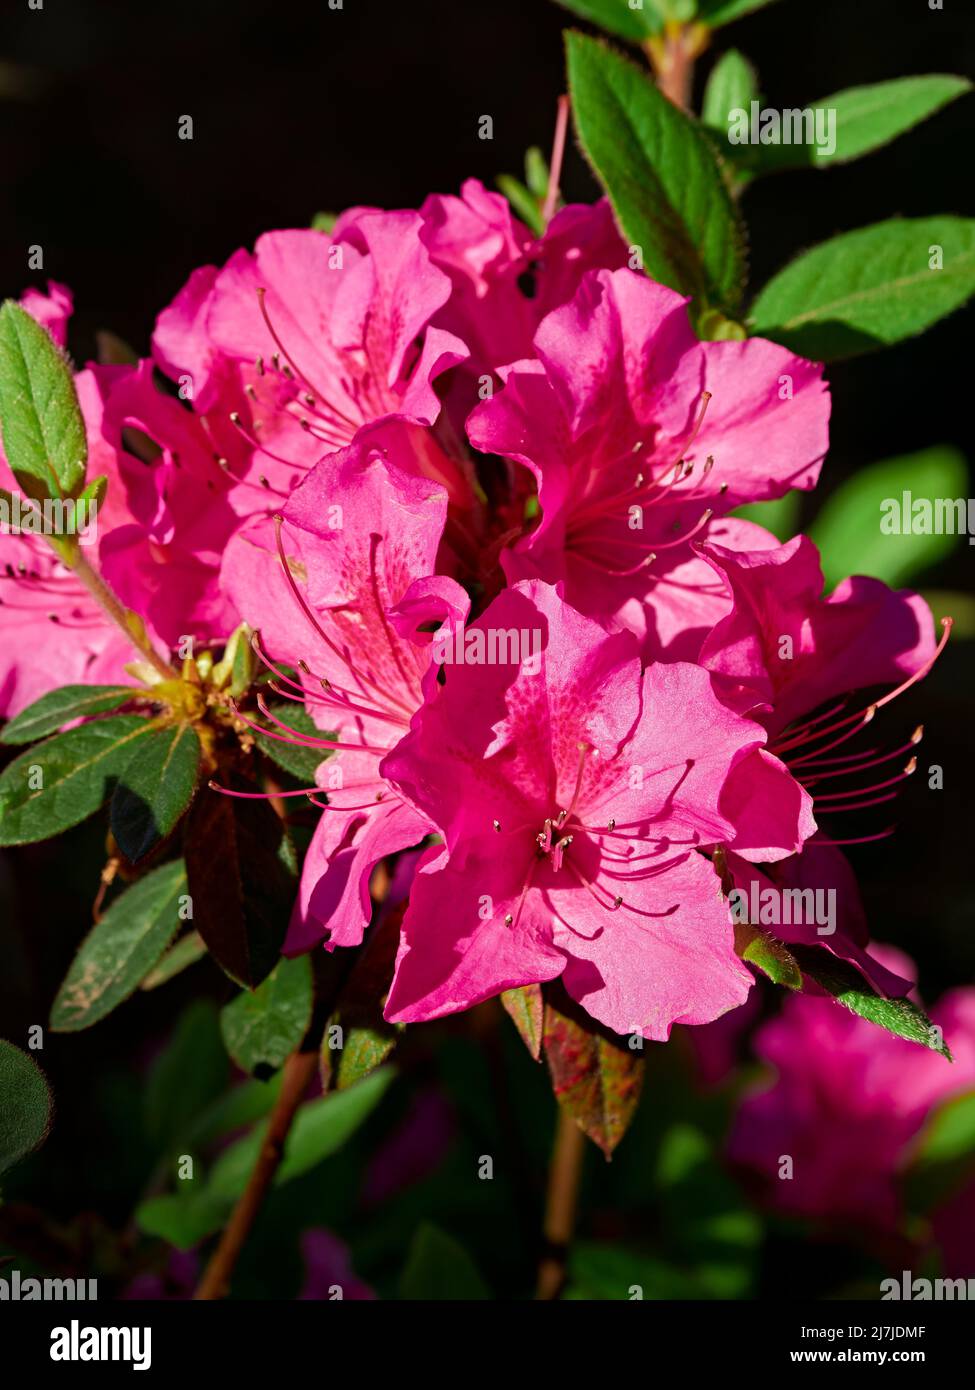 Azalea refloreciente o azalea rosa caliente floreciente, una flor de rododendro en un jardín en Alabama, Estados Unidos. Foto de stock